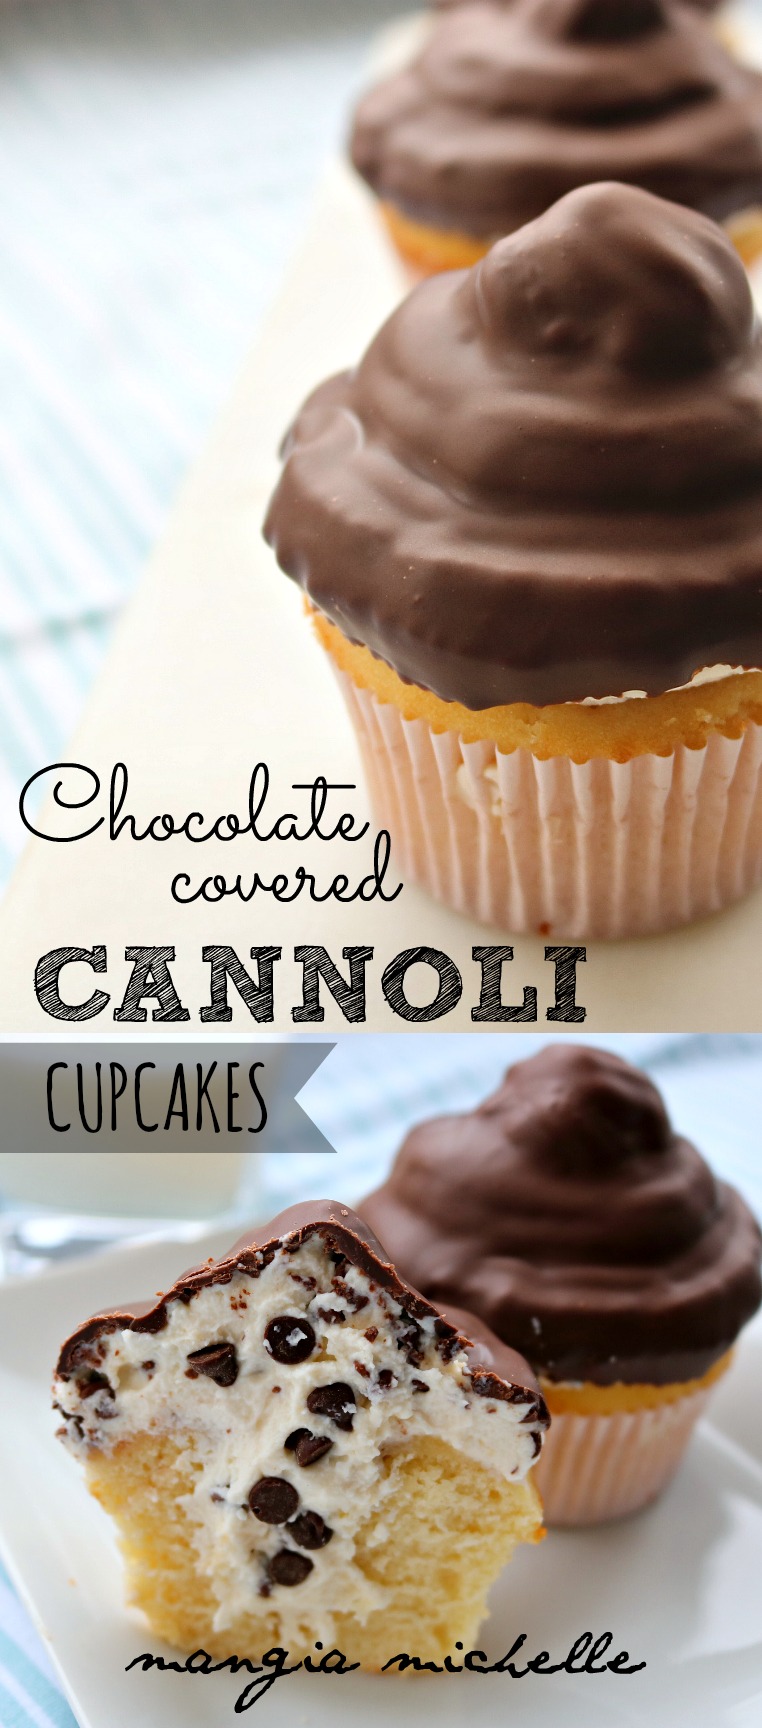 Cupcakes de Cannoli Cubiertos de Chocolate